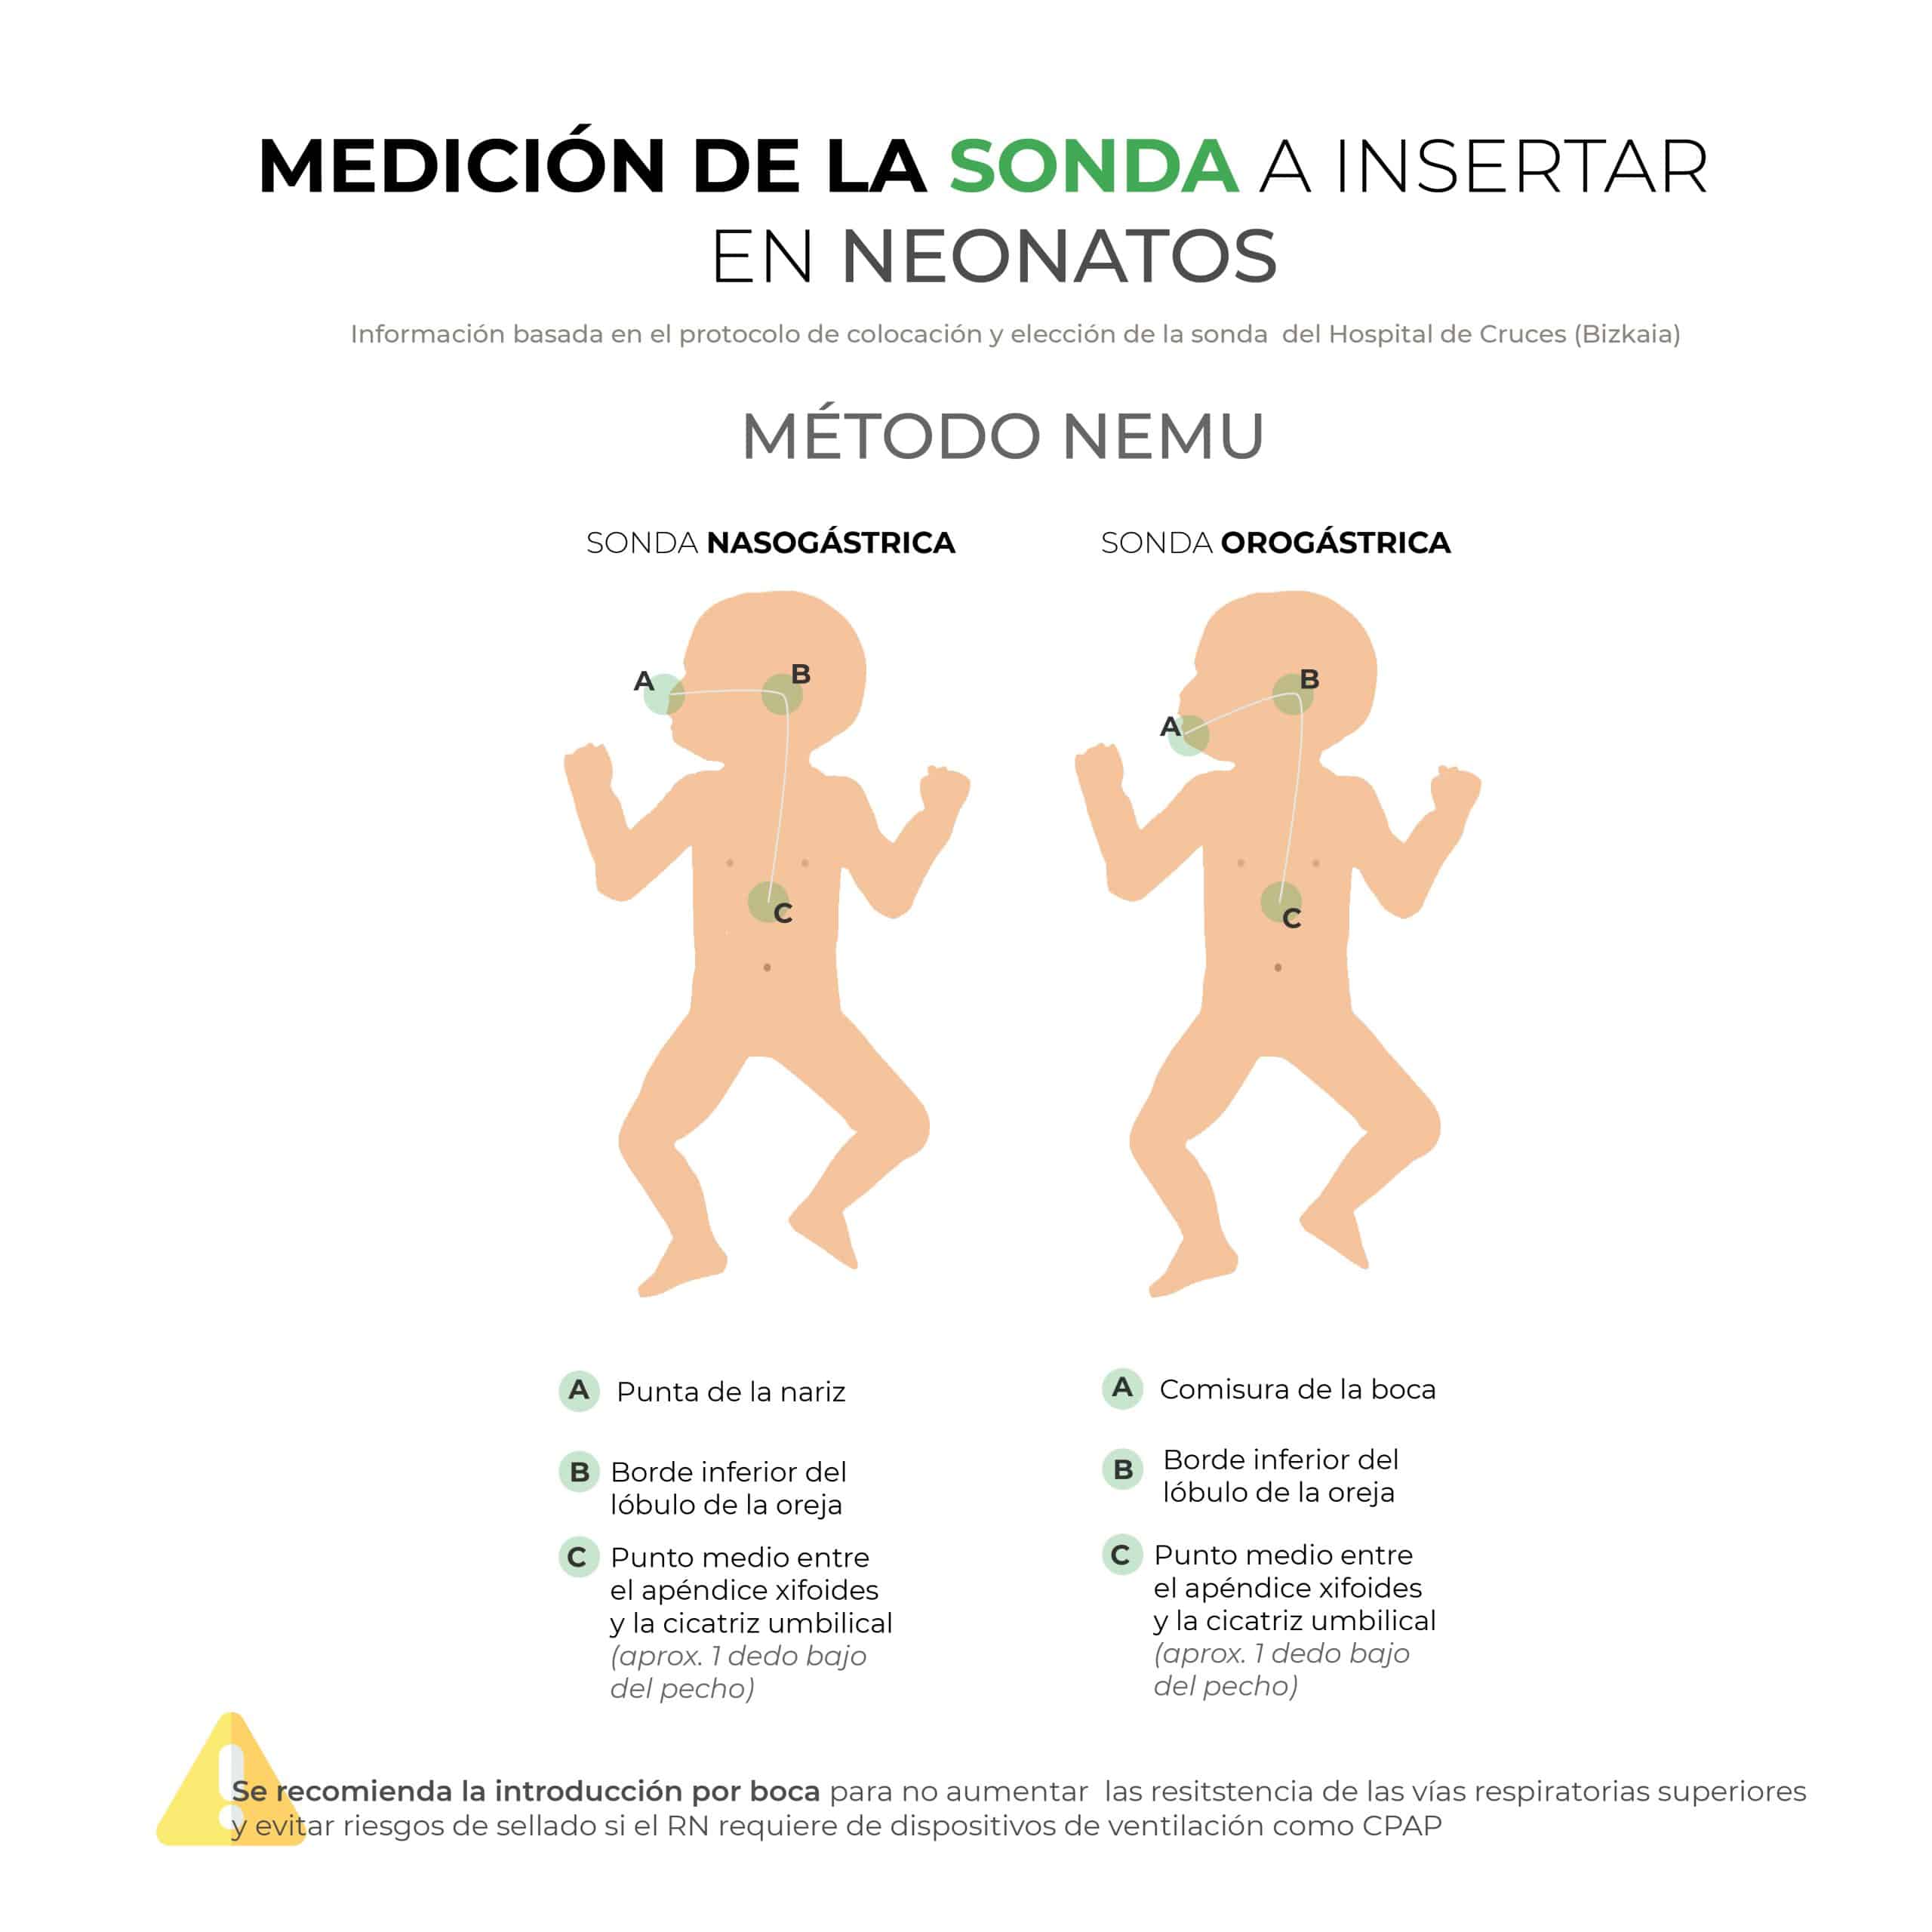 Medición de la sonda a insertar en neonatos: método NEMU